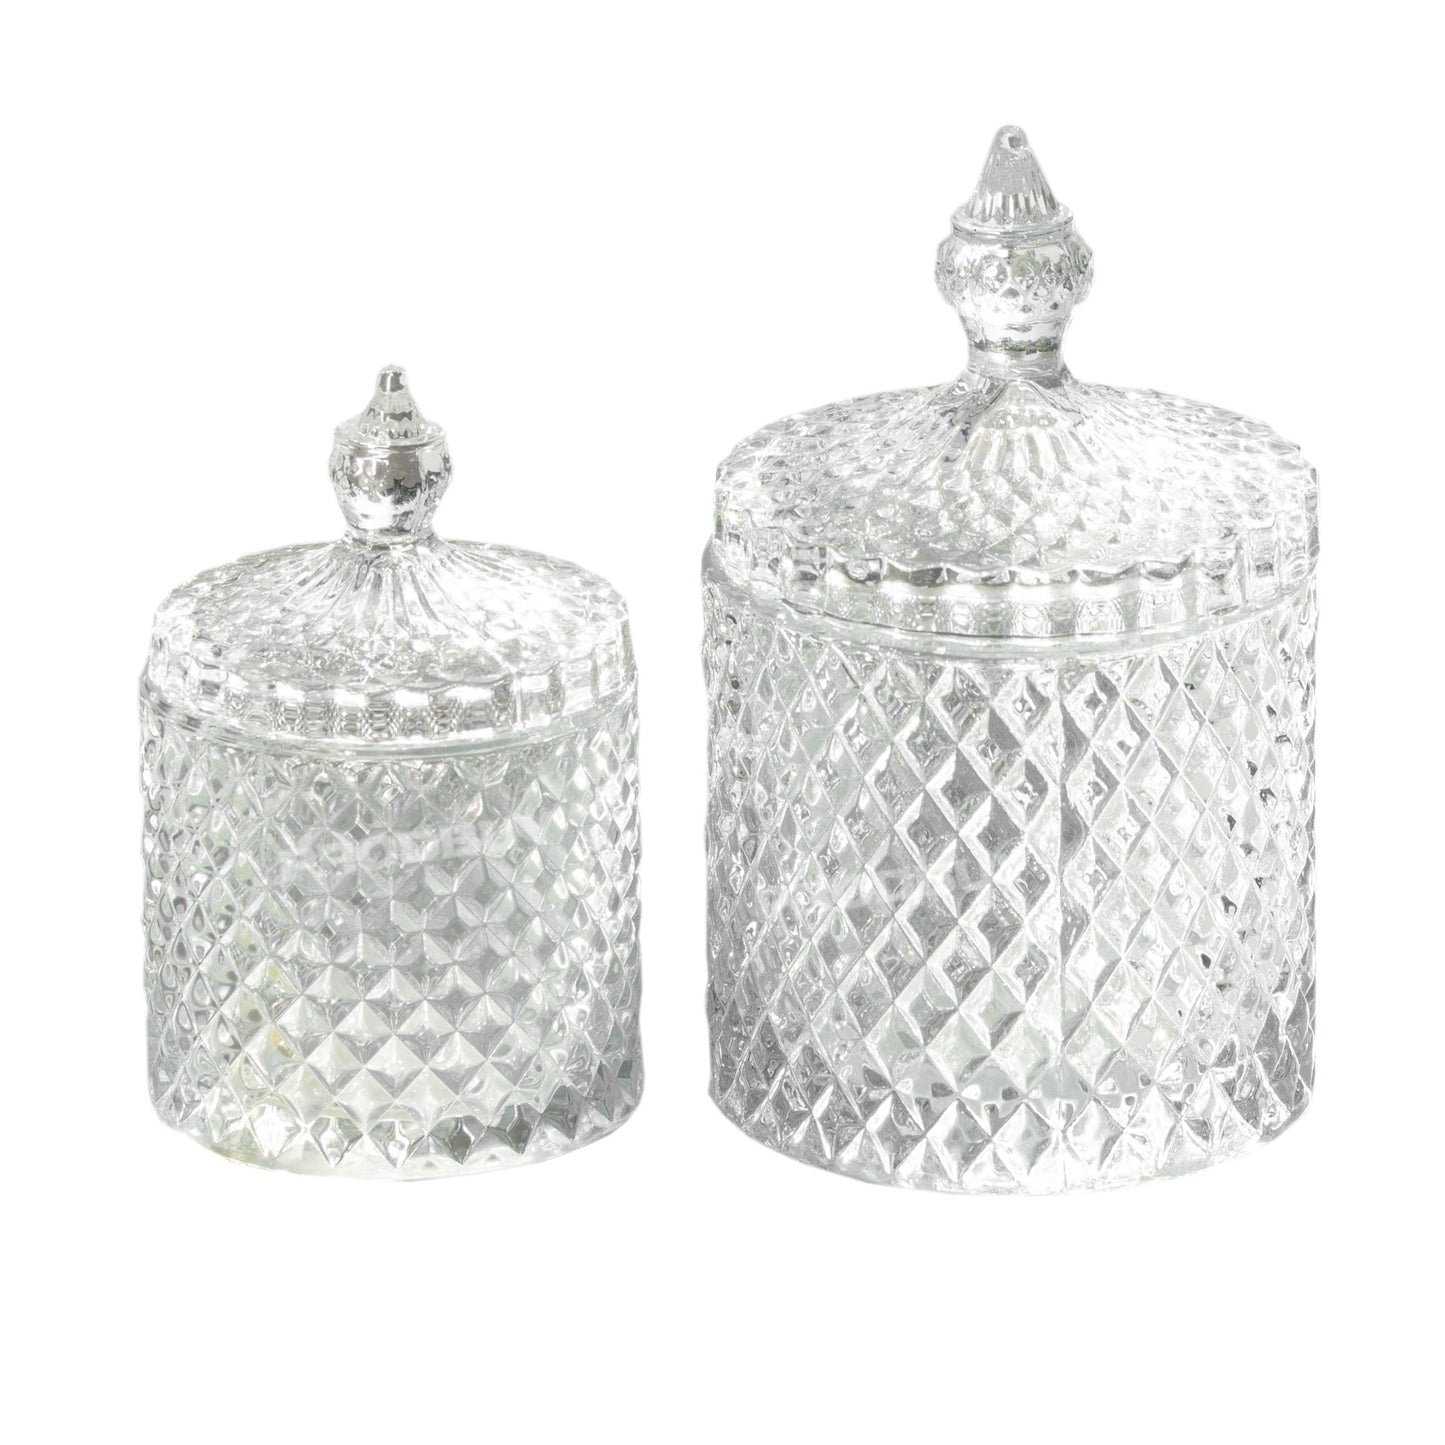 2 x Vintage Glass Bon Bon Sweets Jars with Lids